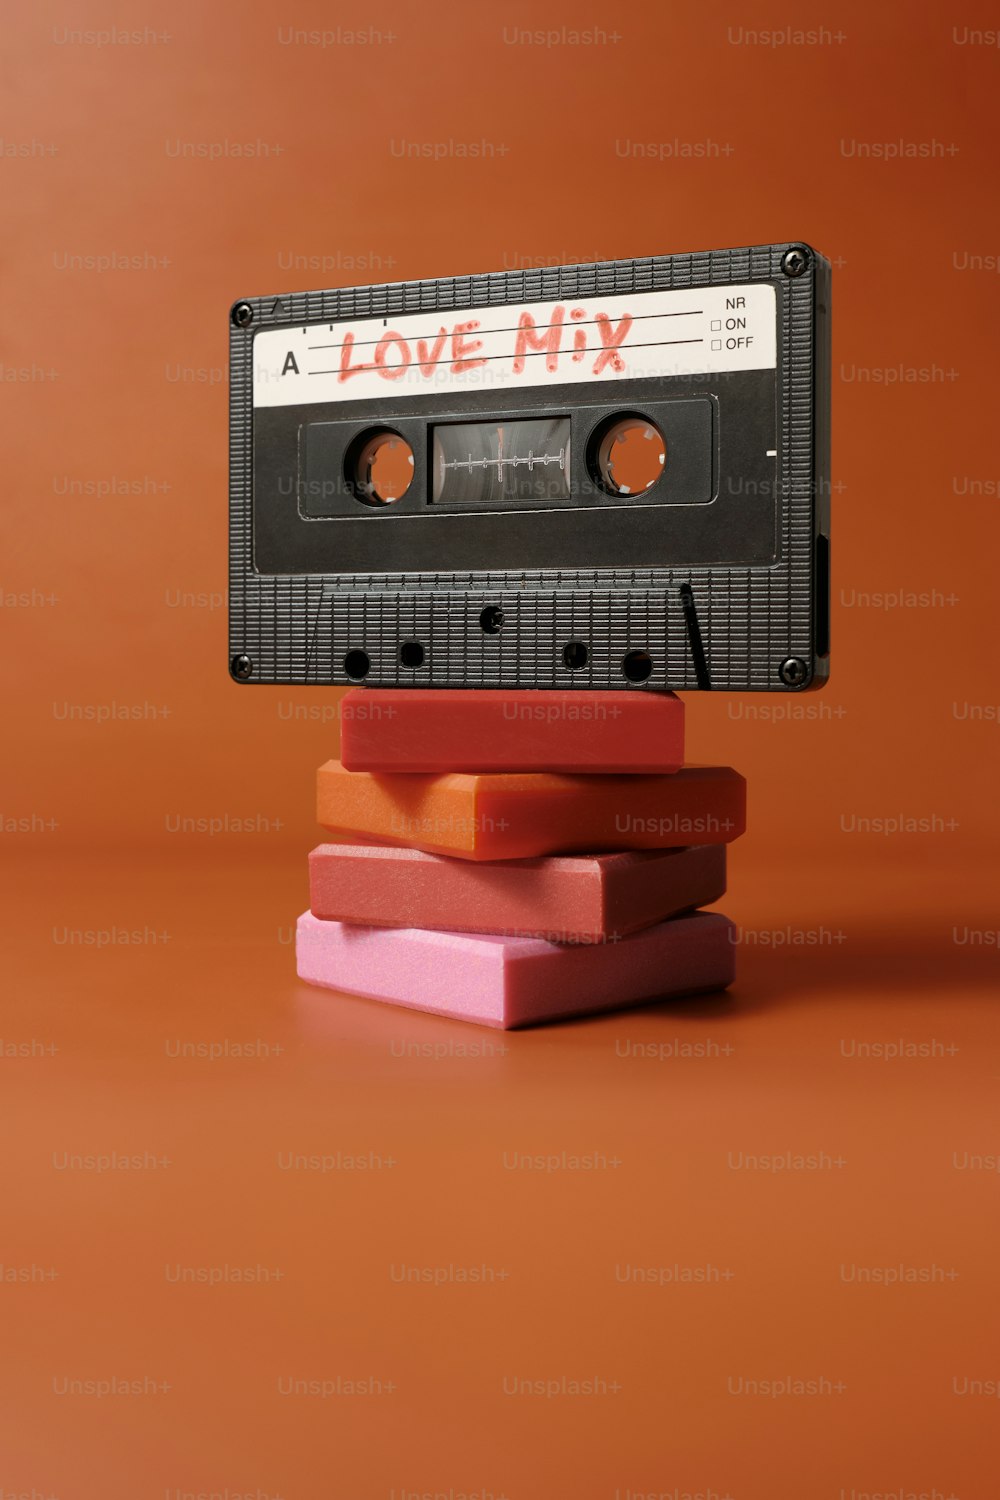 Un casete con la palabra Love Mix encima.